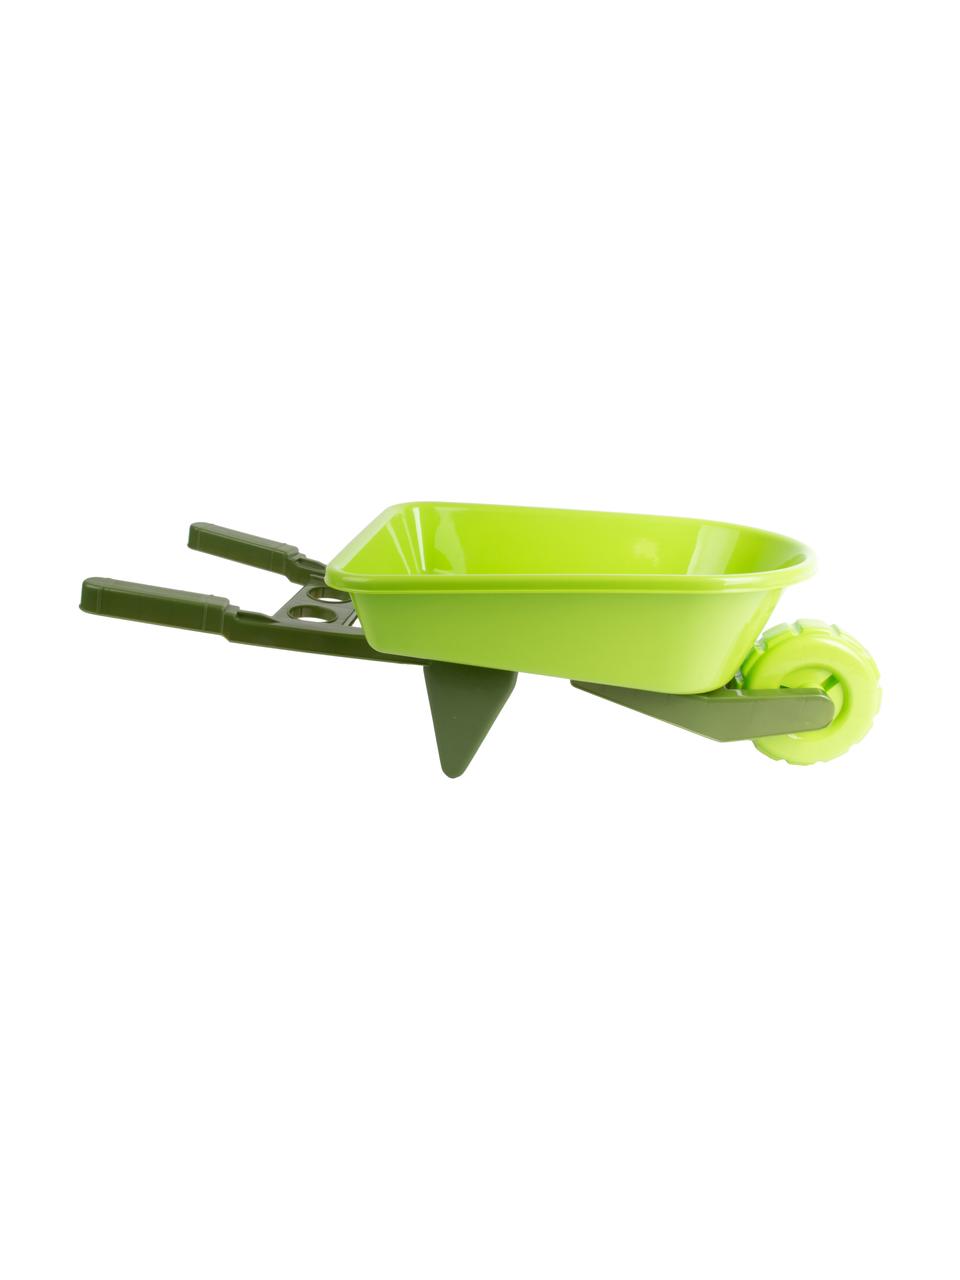 Dětské kolečko Little Gardener, Umělá hmota (PP), Odstíny zelené, Š 66 cm, V 20 cm